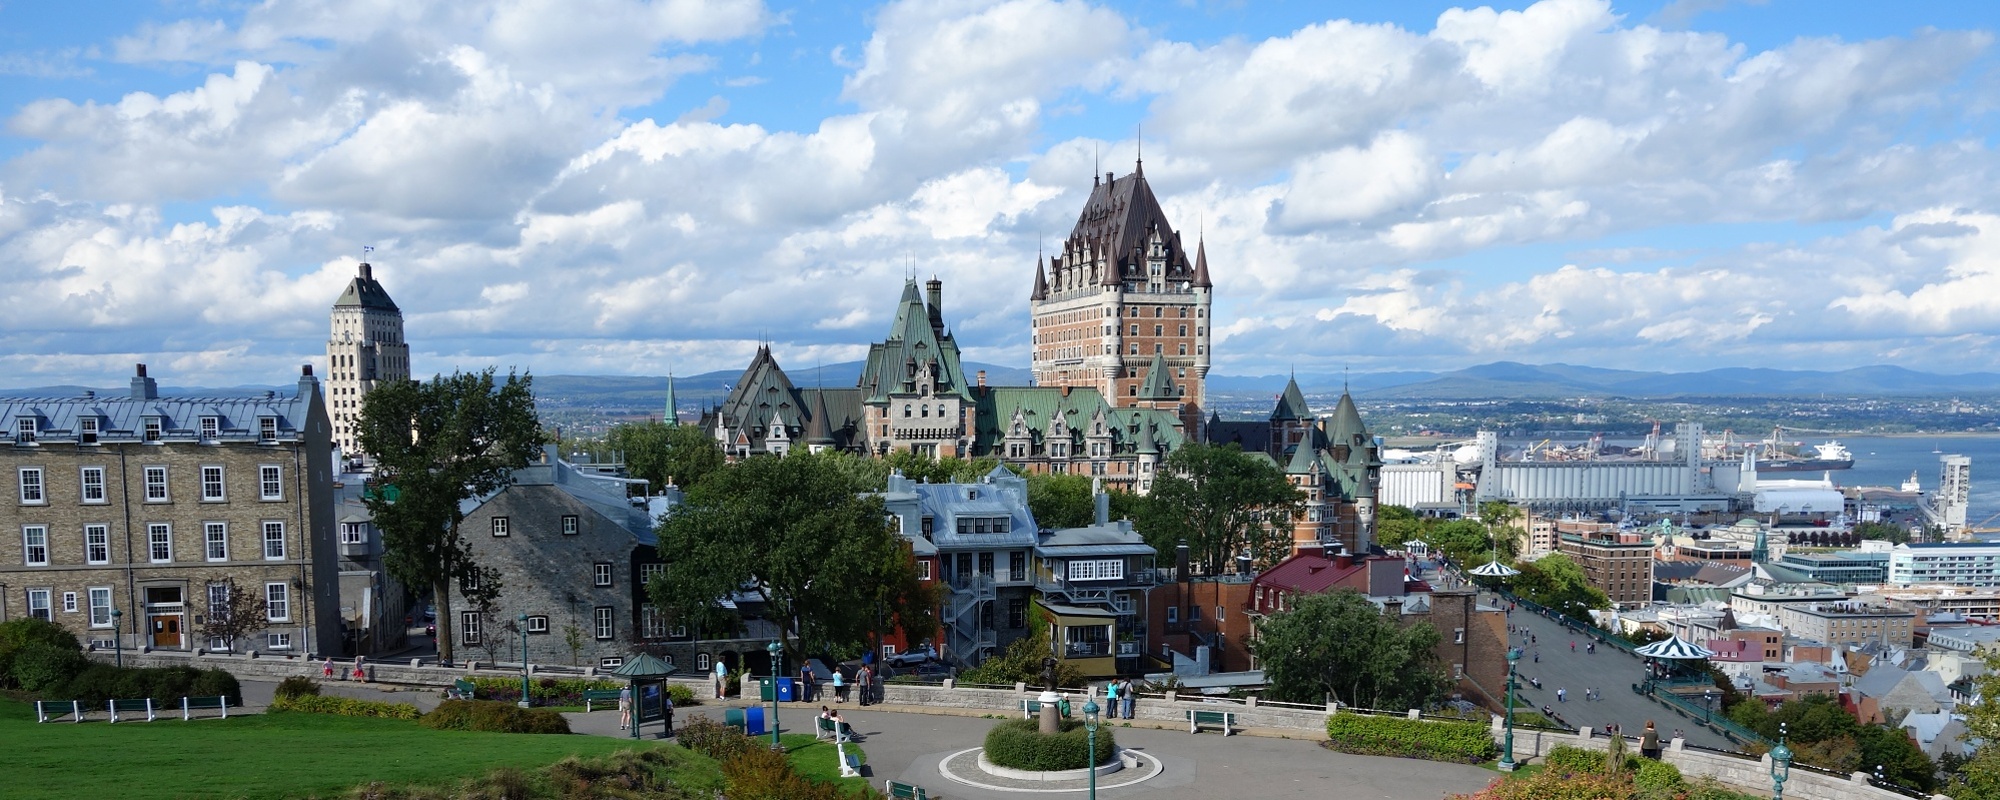 Quebec City Skyline, Canada